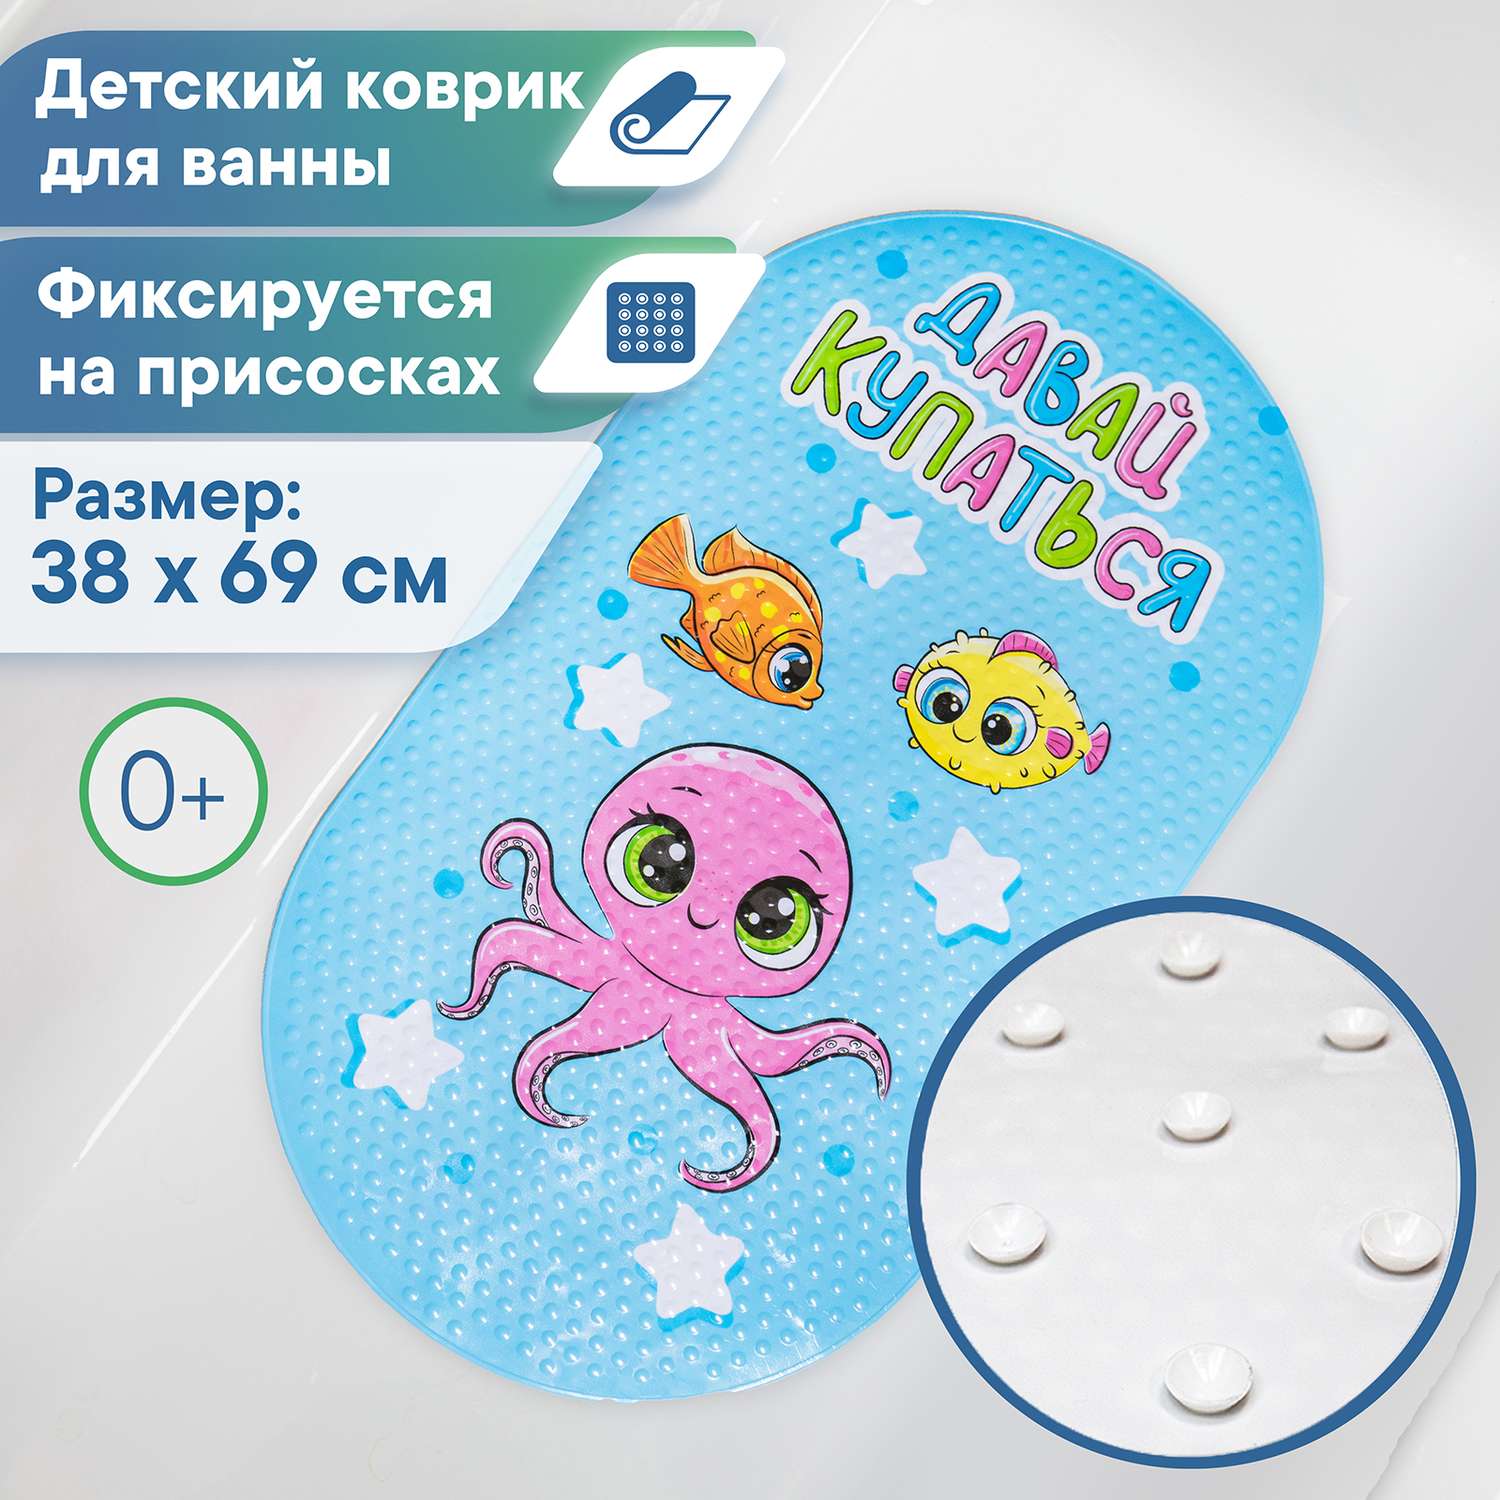 Коврик для ванной детский VILINA противоскользящий c присосками 38х69 см. массажный Осминожка - фото 1